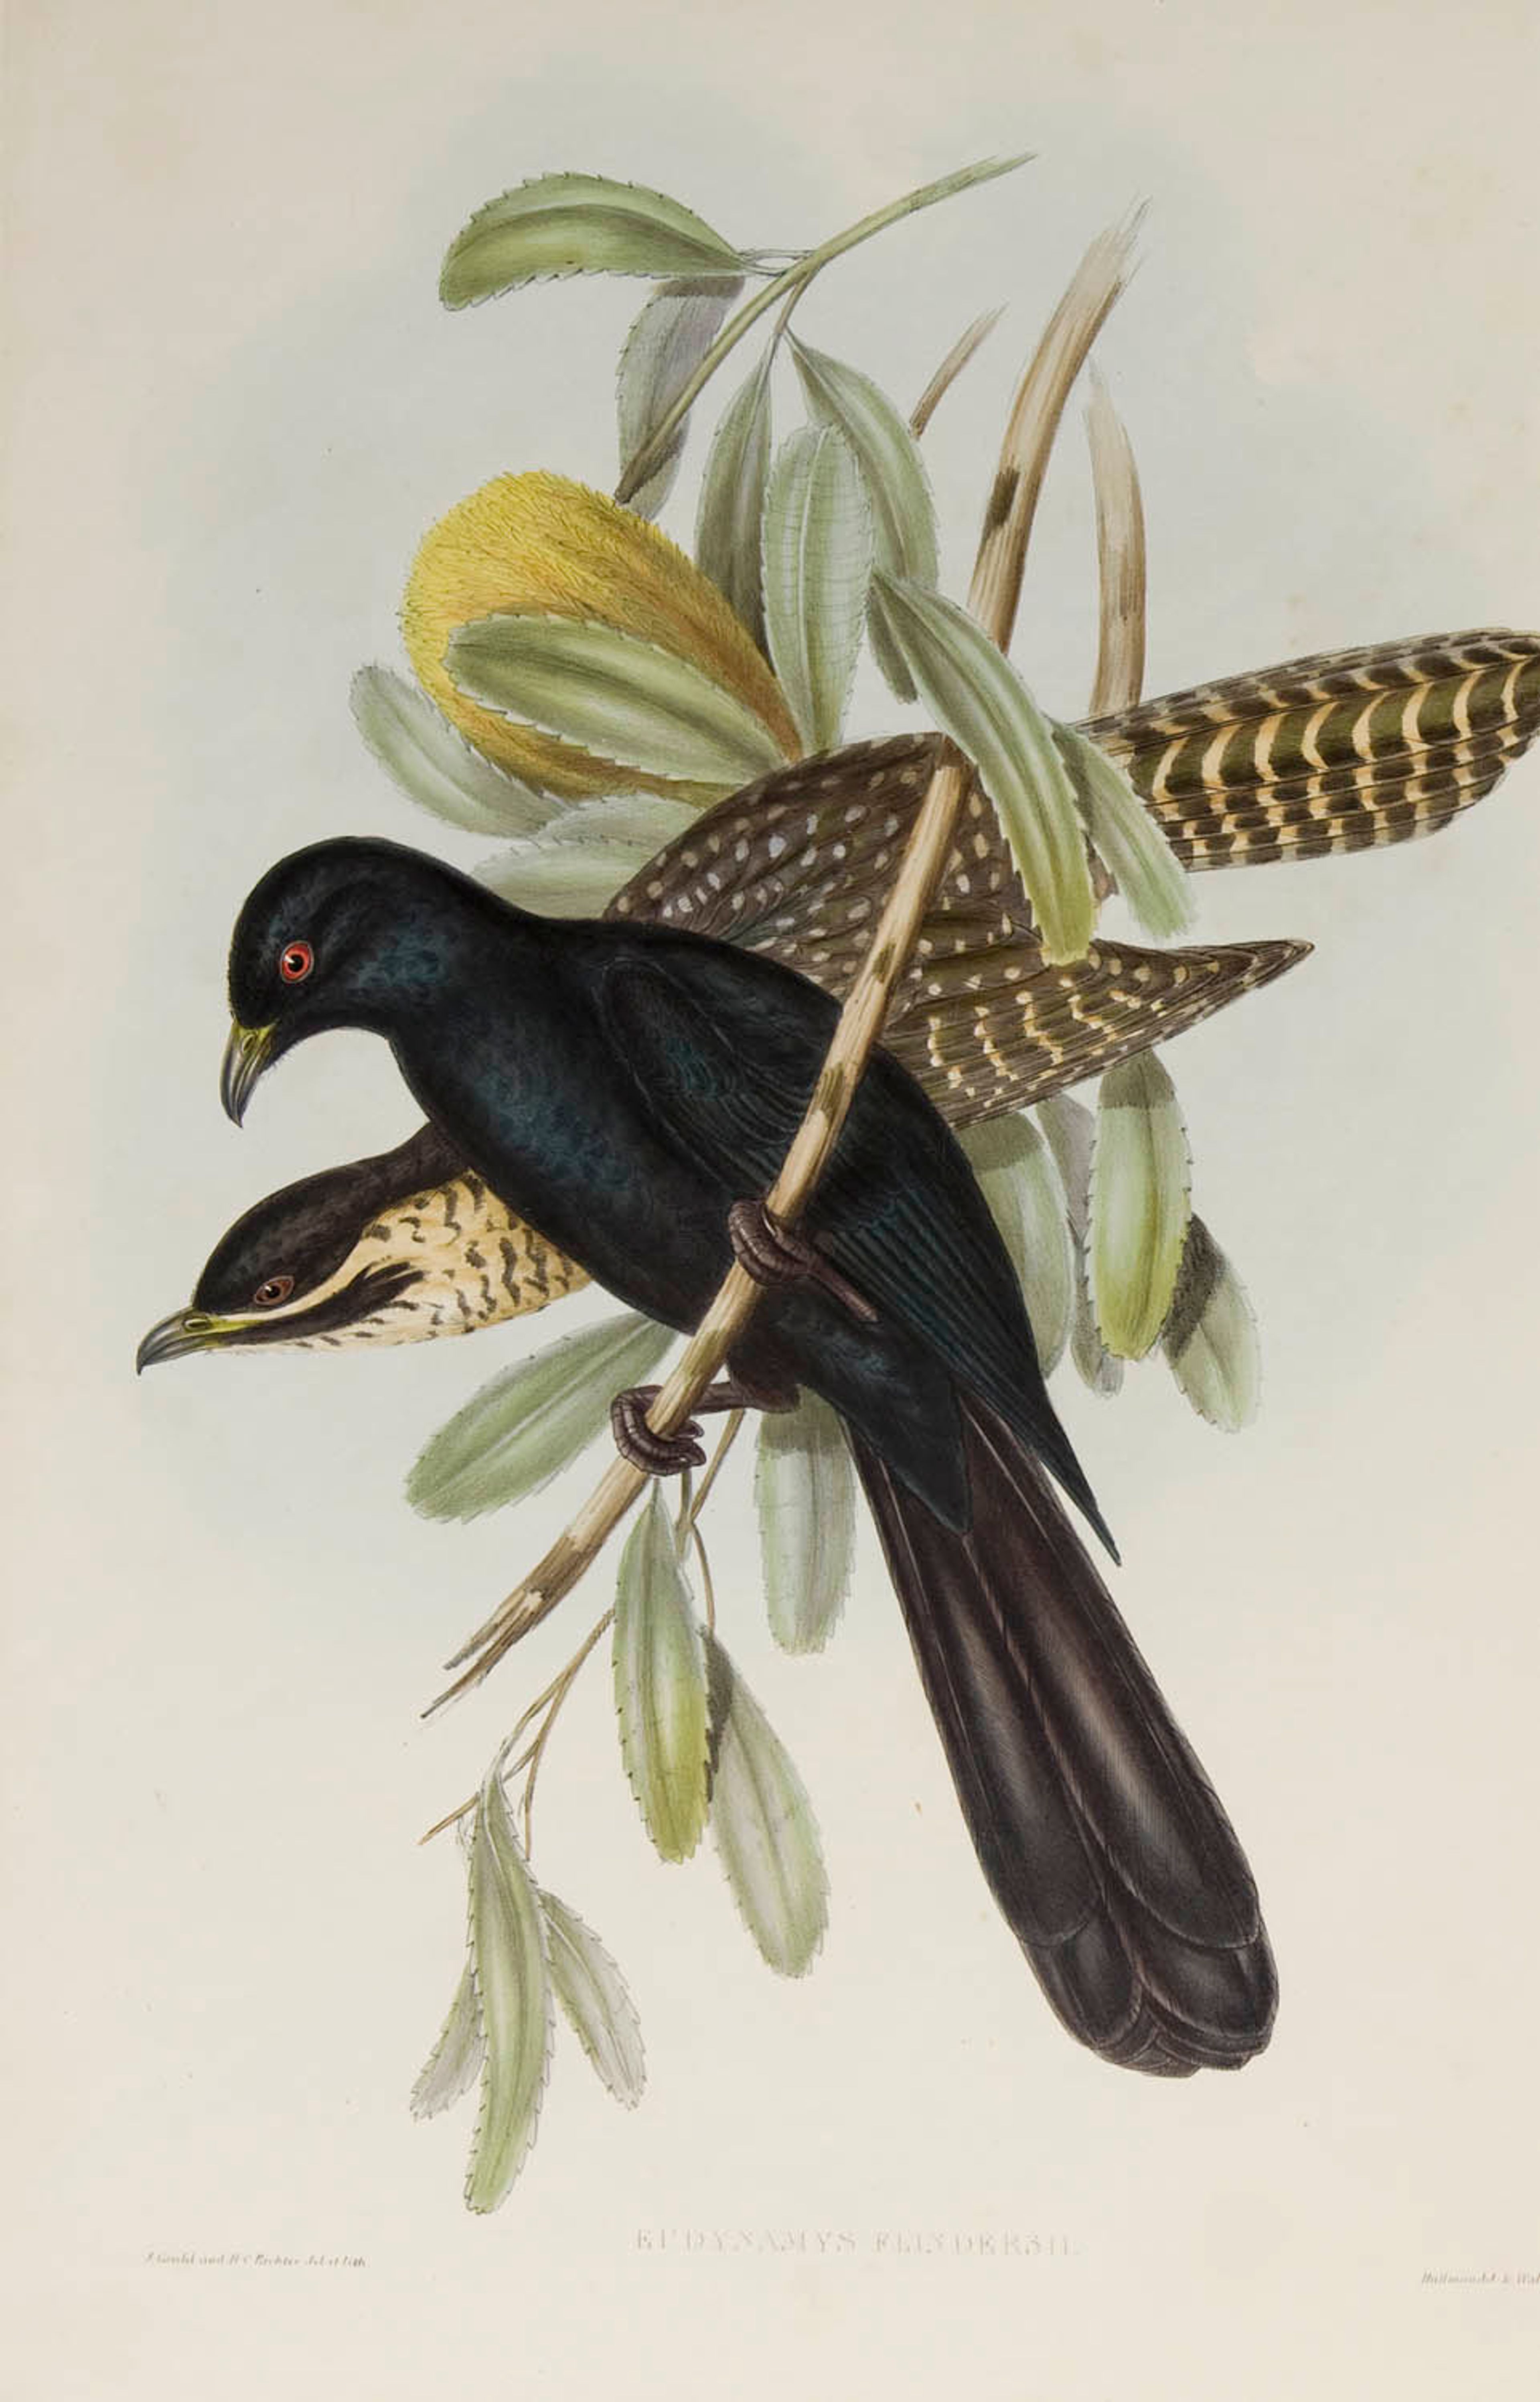 Elizabeth Gould, Eudynamys Flindersii (Australische Koël) in 'The Birds of Australia', 1848-1870.